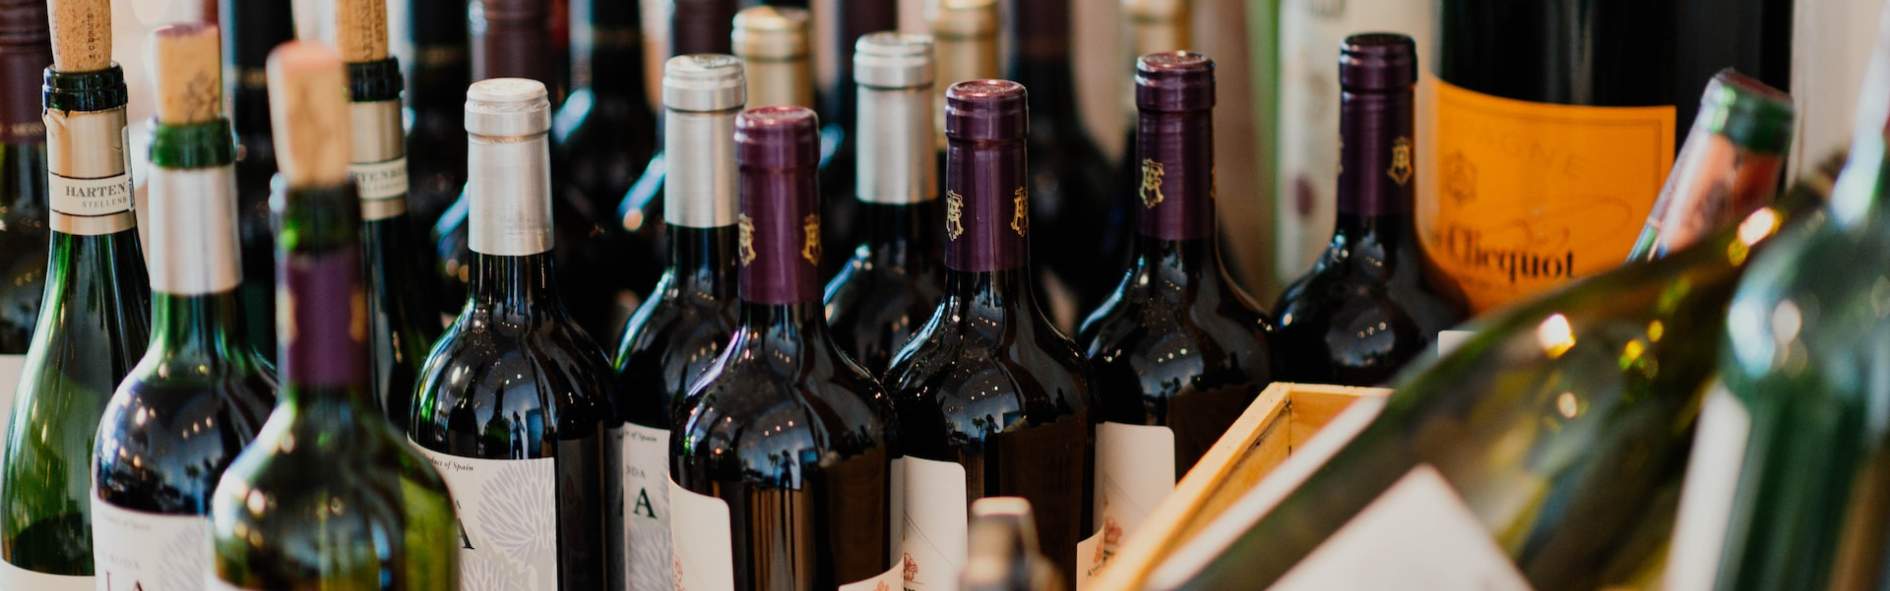 Descubre cómo elaborar una carta de vinos profesional